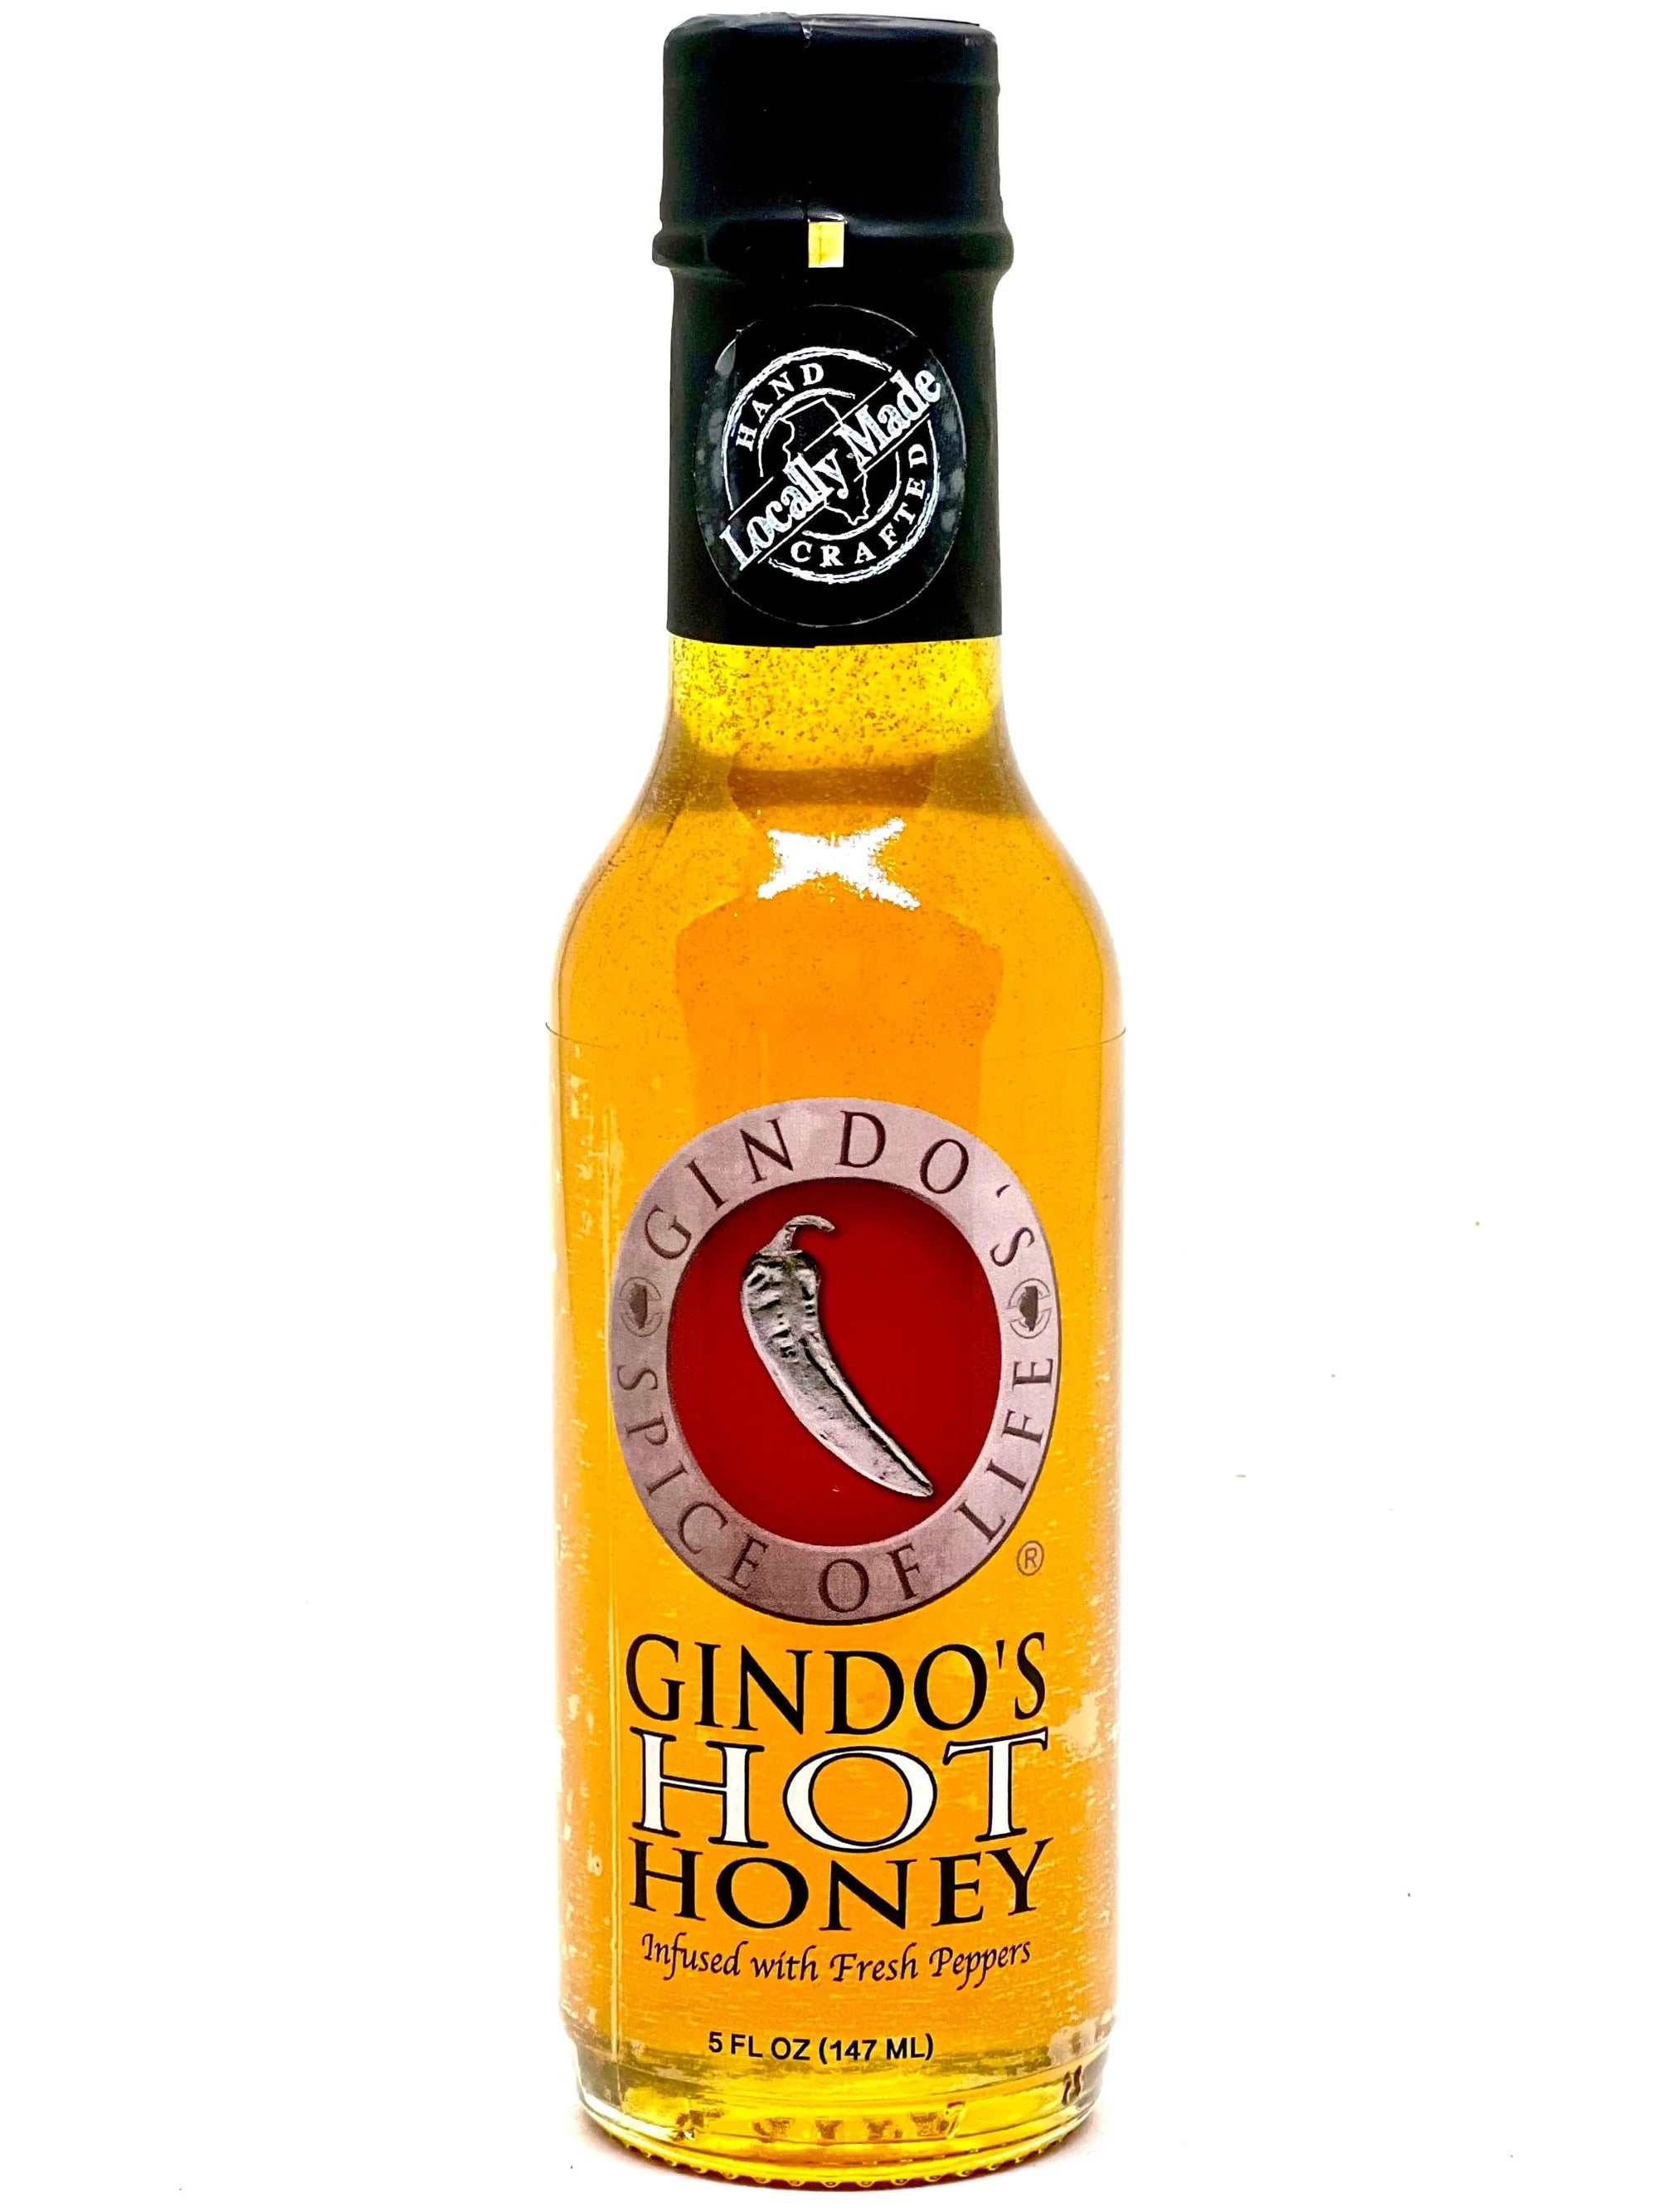 Gindo's Hot Honey